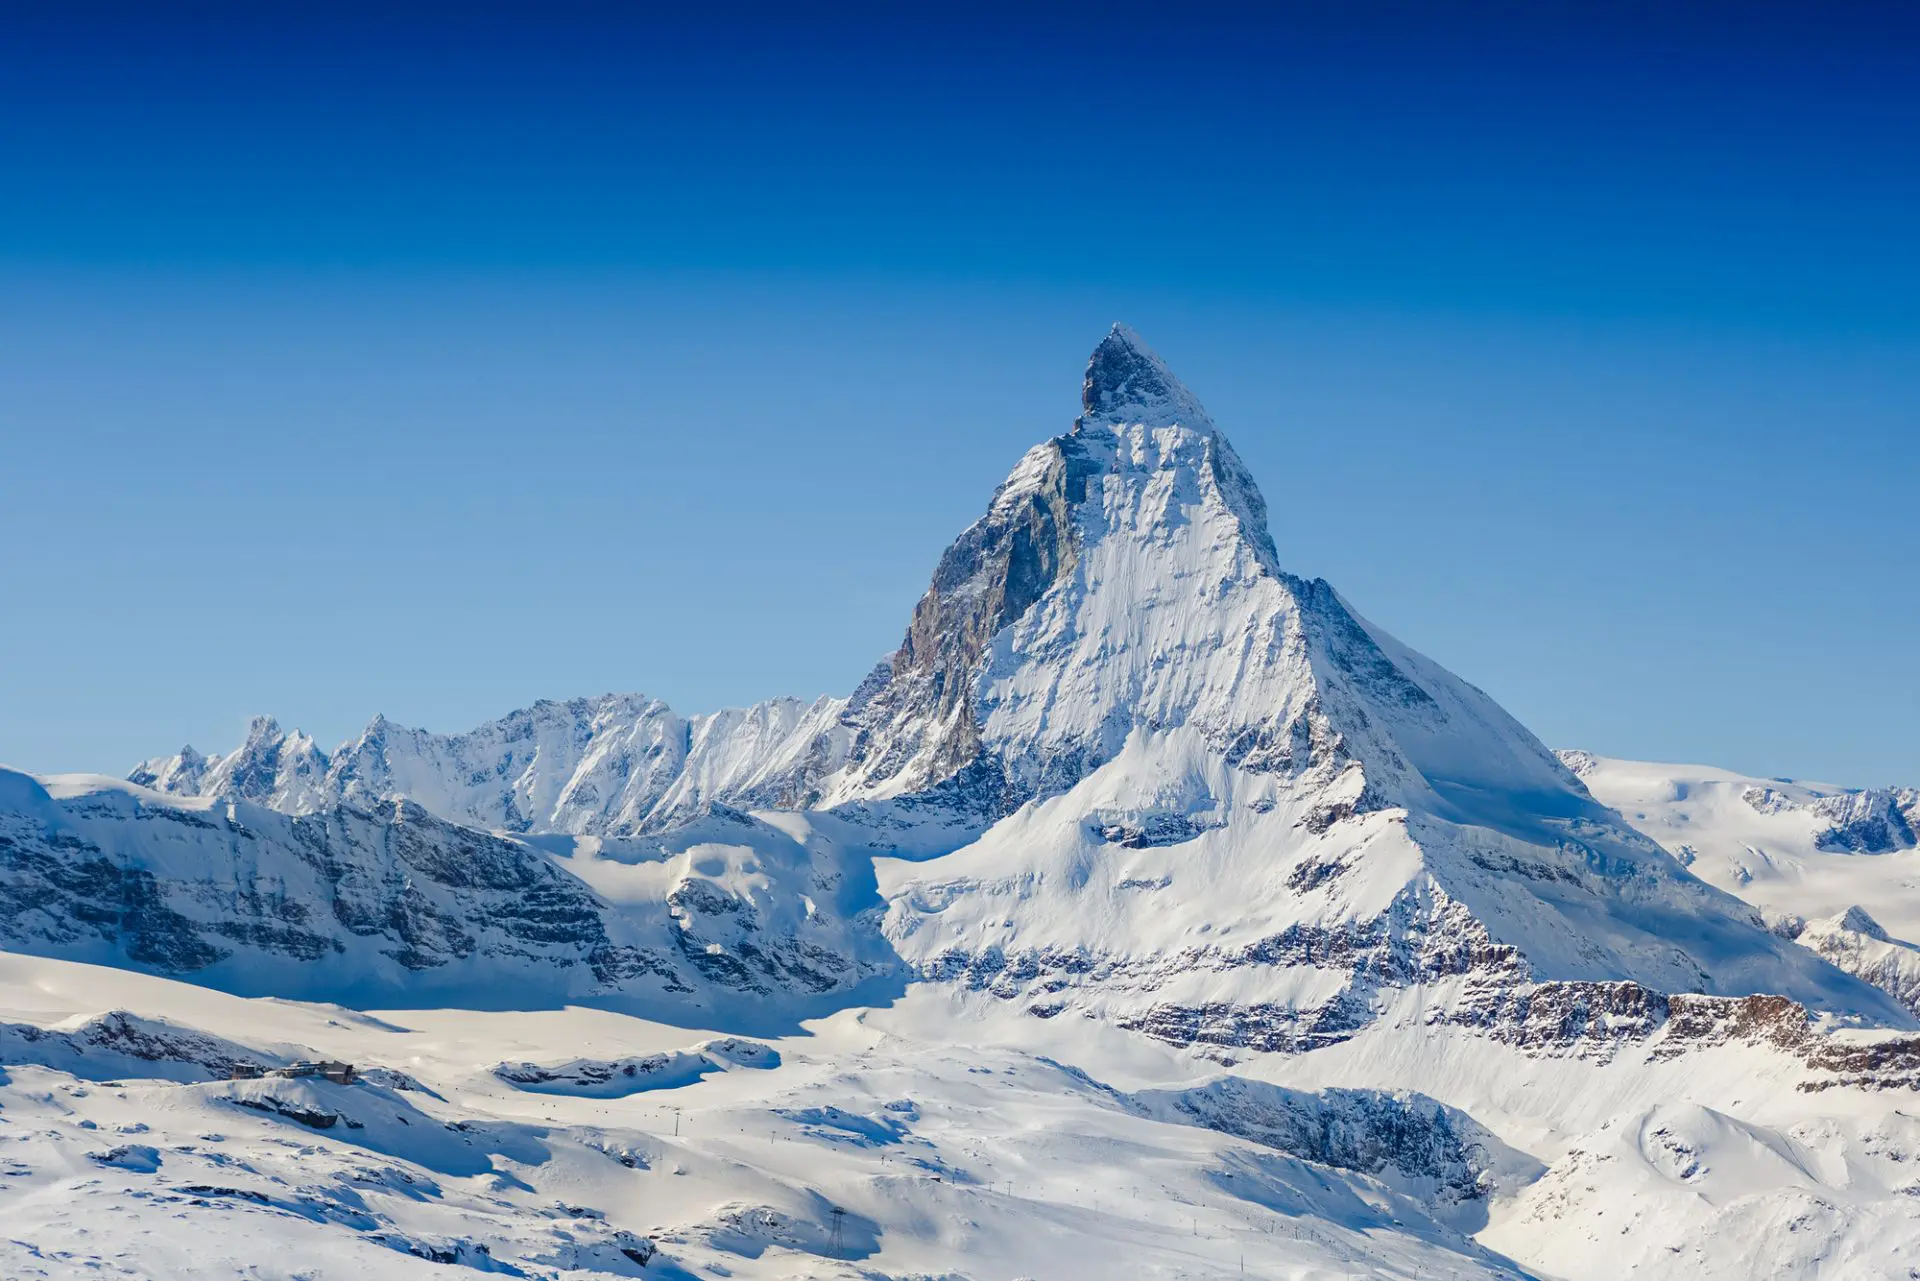 Ελβετία: Βρέθηκαν τα λείψανα ενός Γερμανού ορειβάτη που είχε εξαφανιστεί το 1986